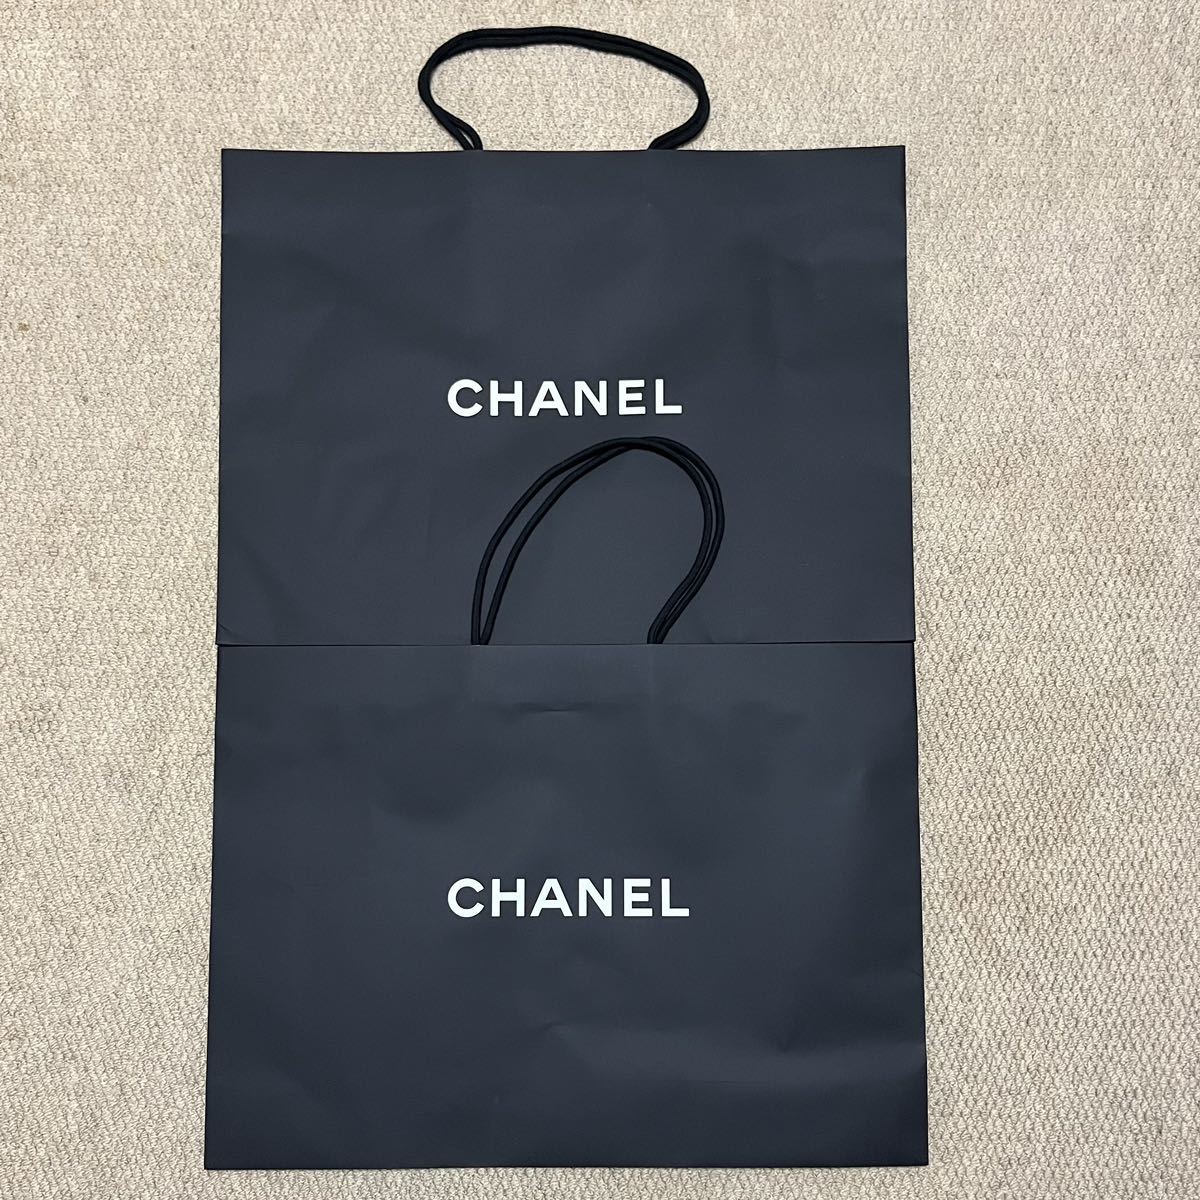 シャネル CHANEL ショッパー ショップ袋 紙袋 ブランド紙袋 サイズ